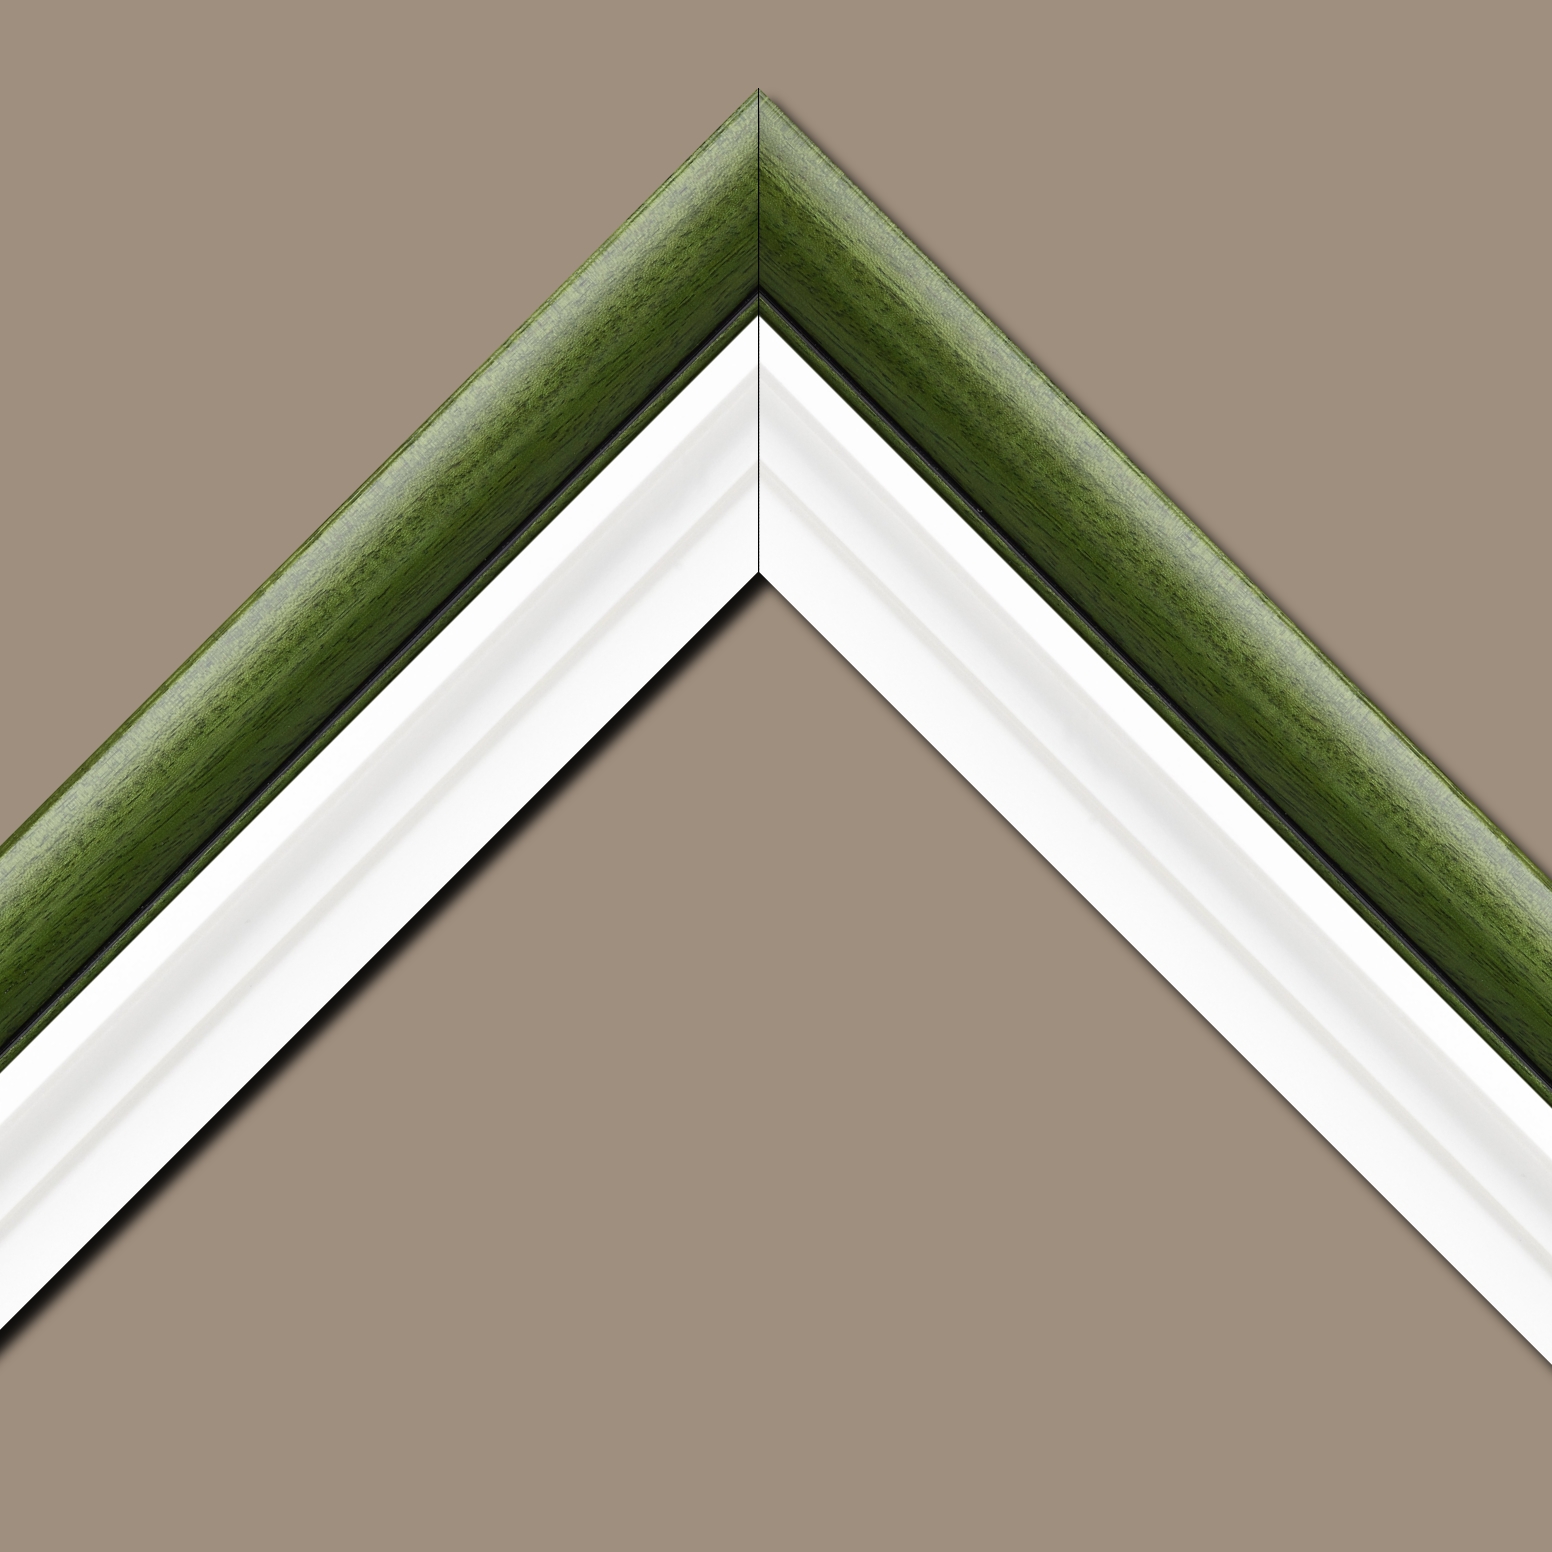 Caisse américaine pour peintures  americaine bois blanc vert — 92 x 73